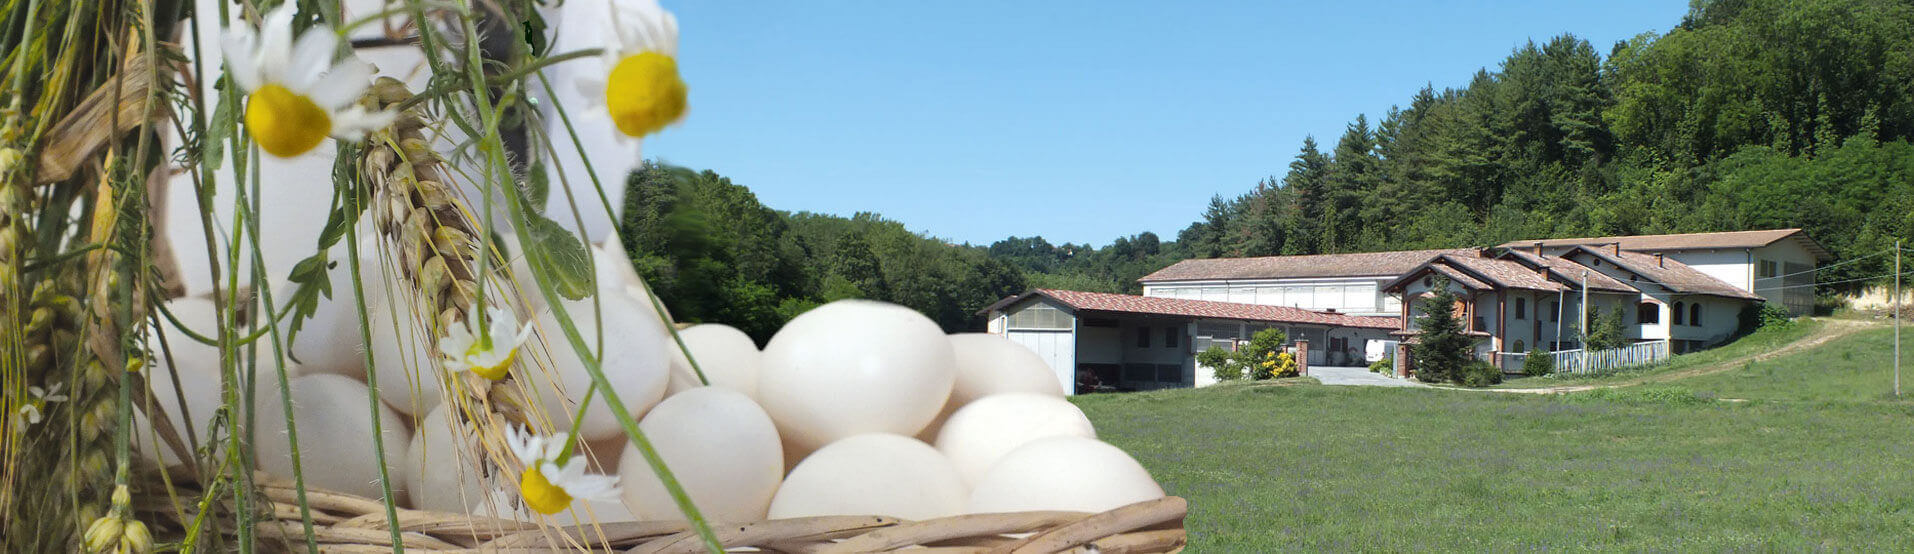 Azienda Agricola Accossato uova fresche da allevamento a terra, Ferrere Piemonte